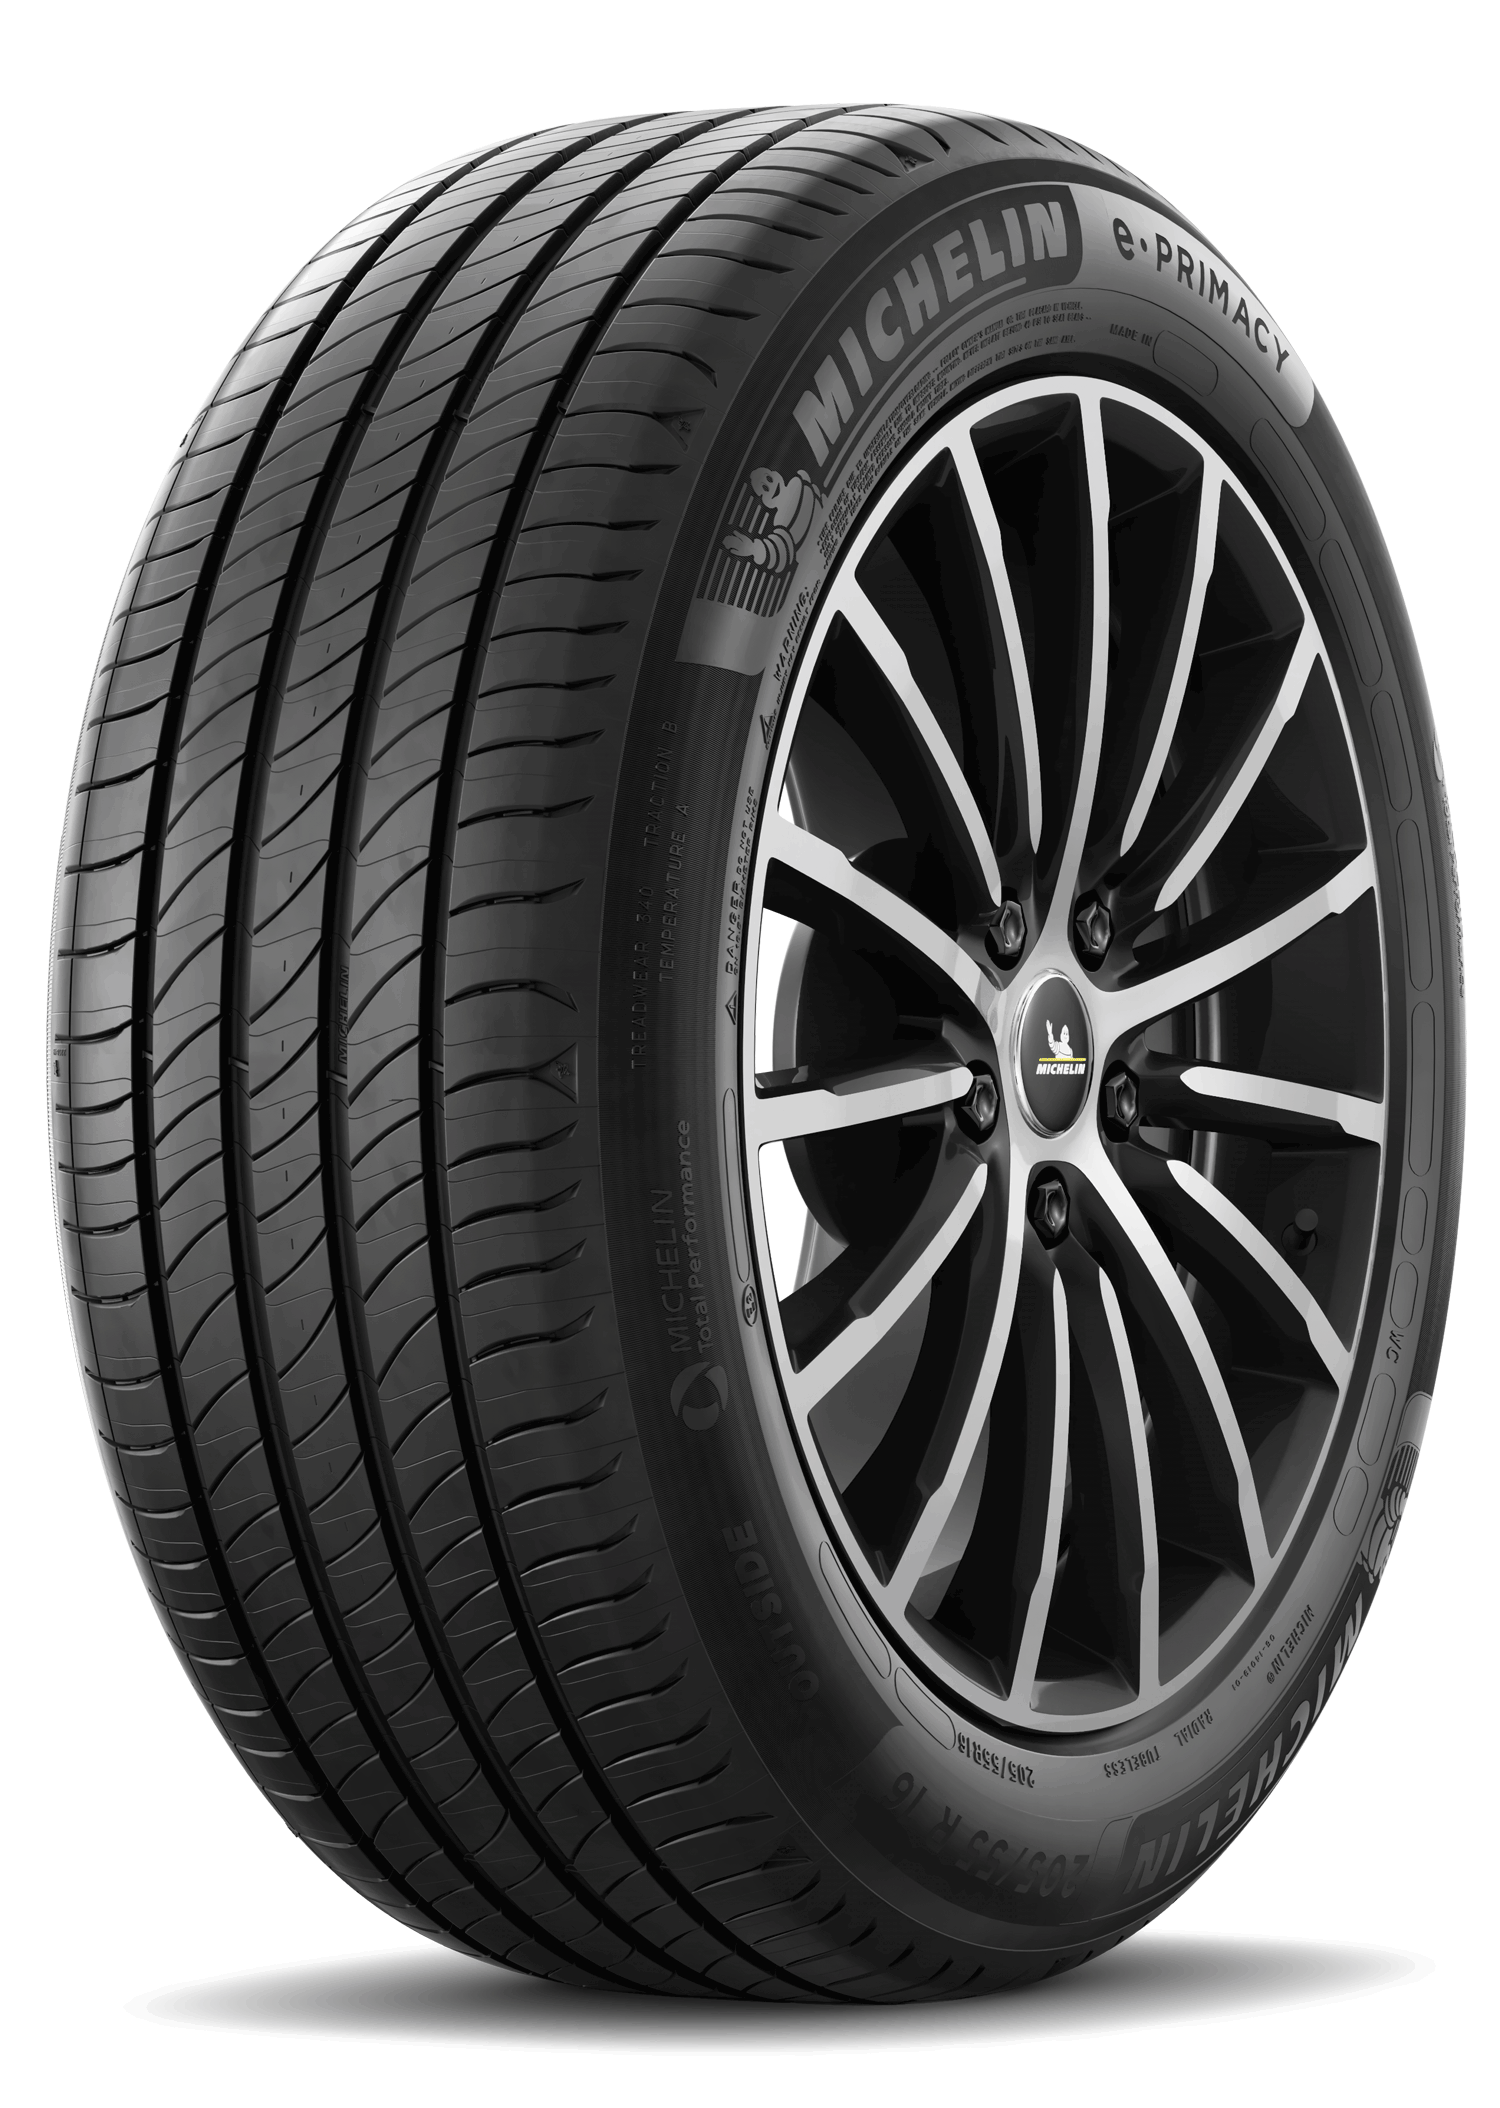 Gomme Nuove Michelin 215/55 R16 97W E PRIMACY pneumatici nuovi Estivo